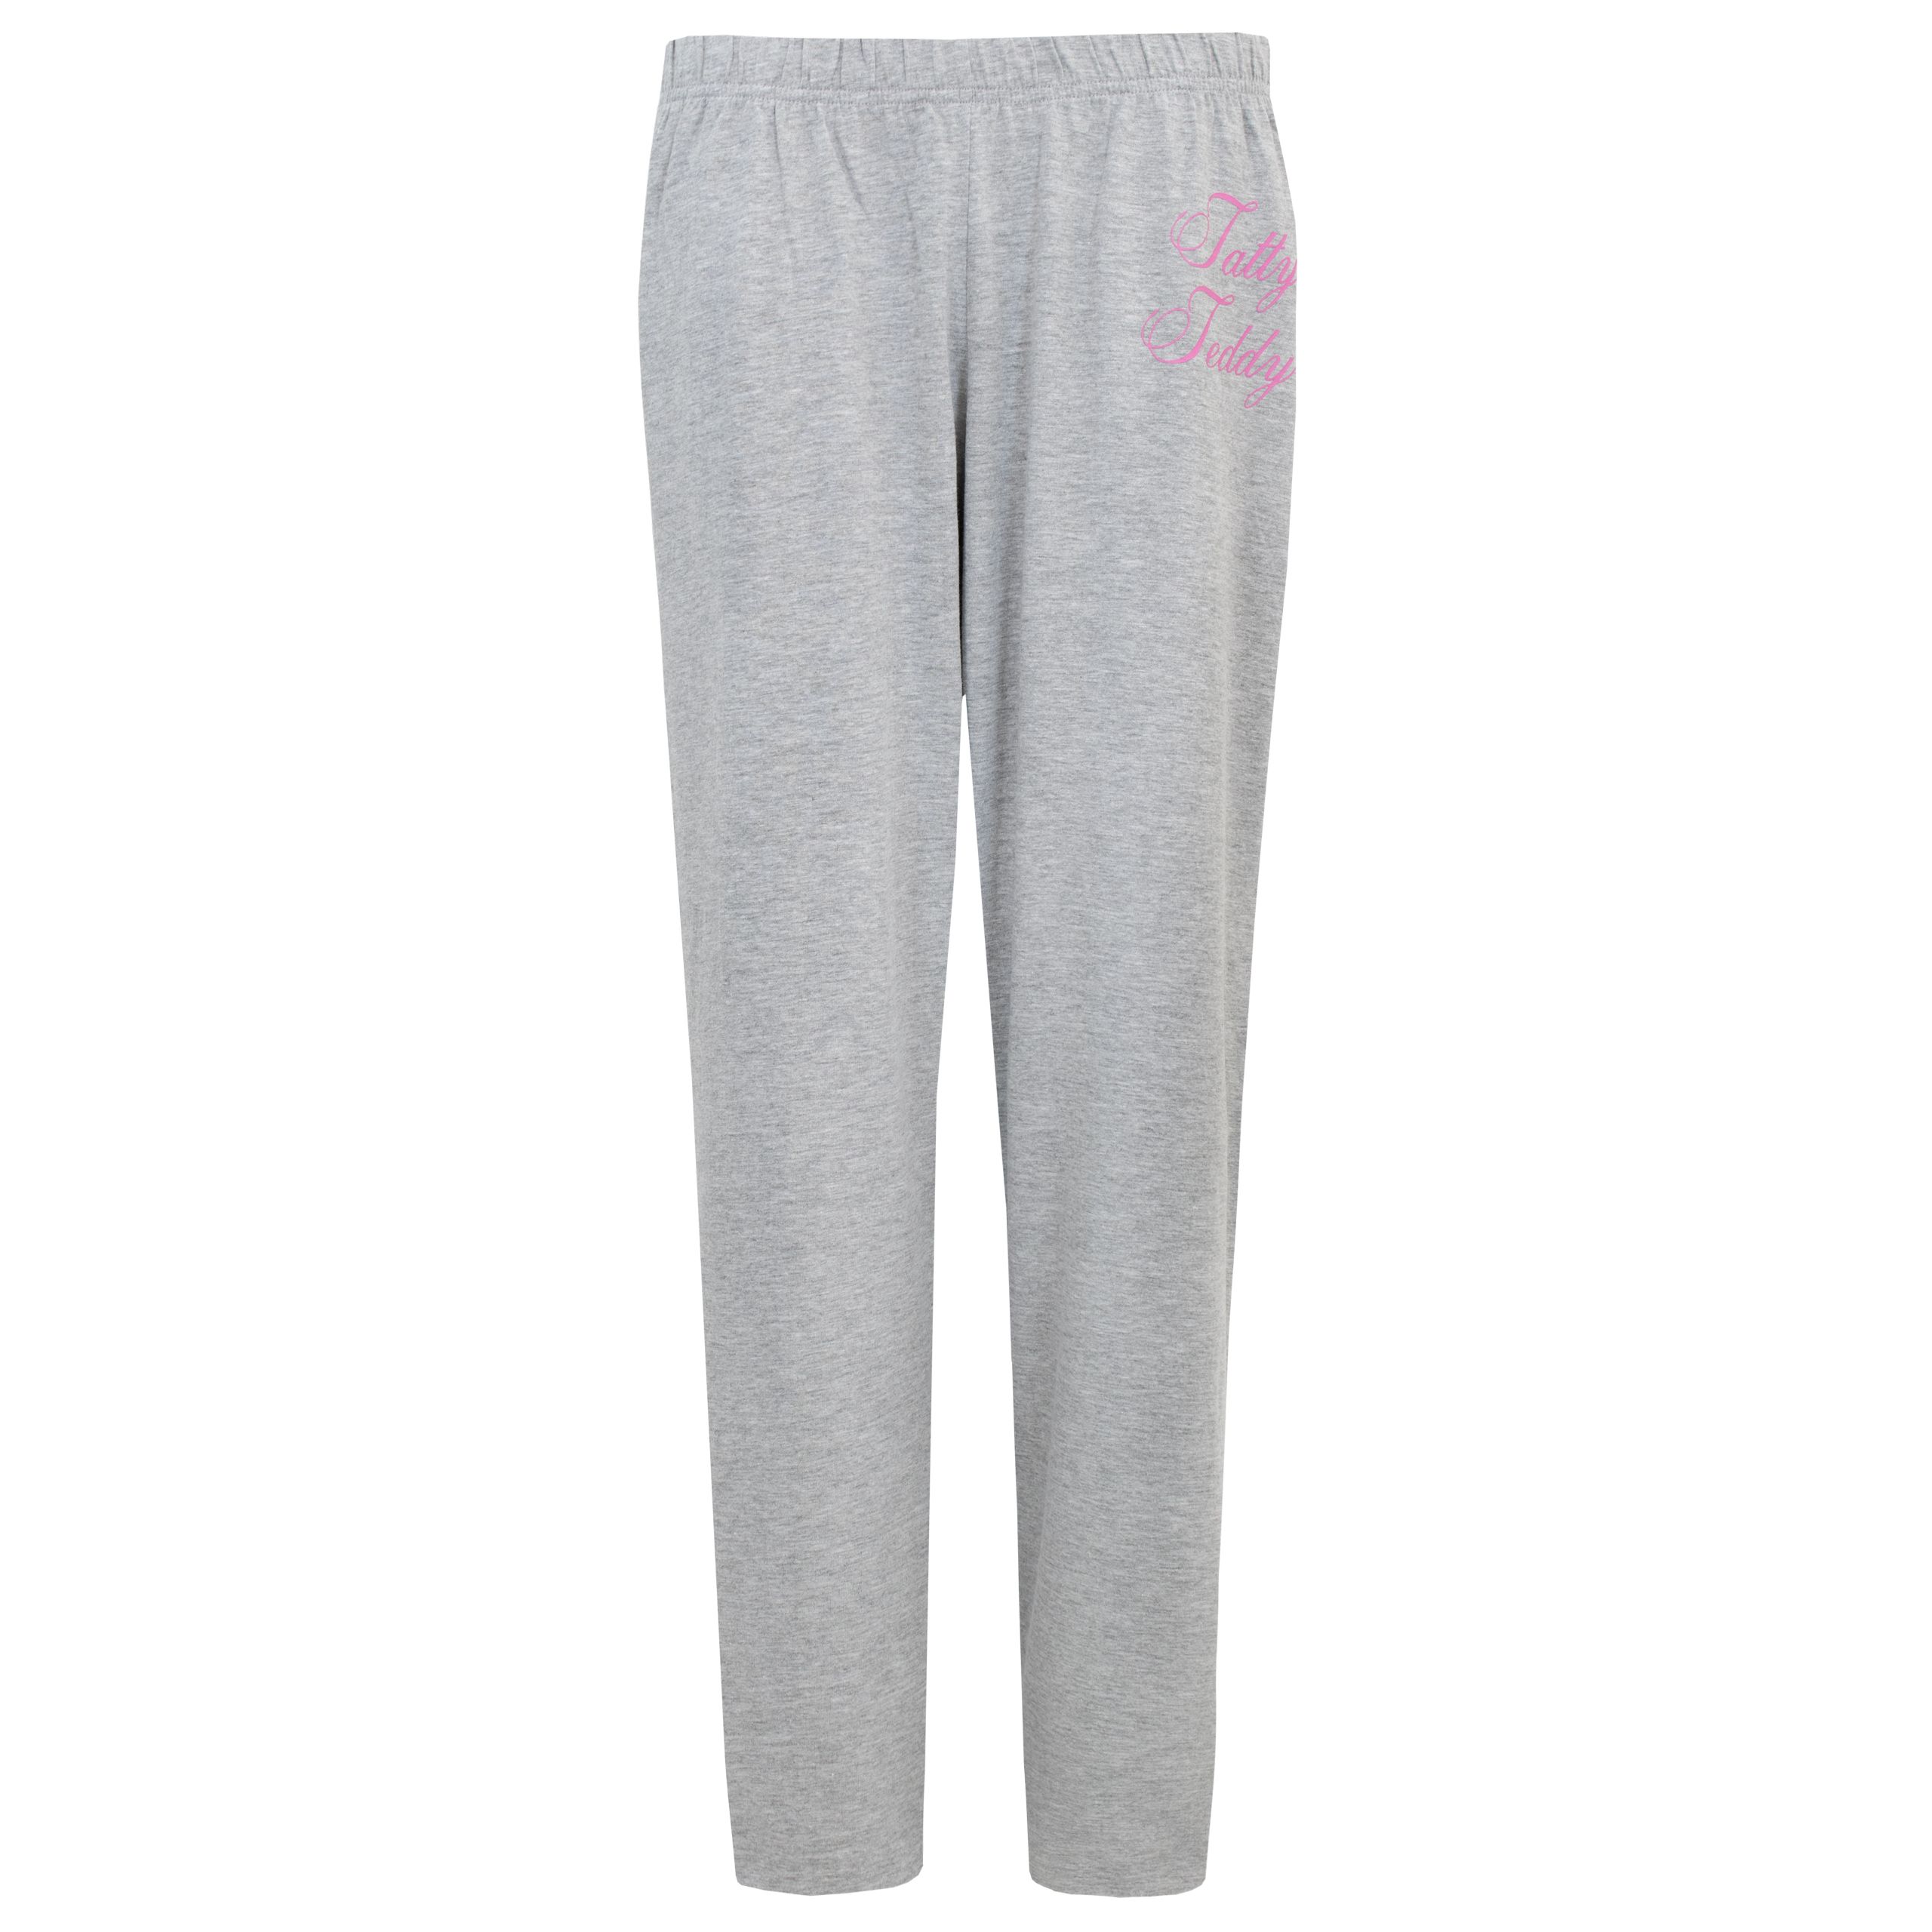 Carte Blanche Womens Tatty Teddy Pajamas Pink Sizes S-XXL - image 3 of 3